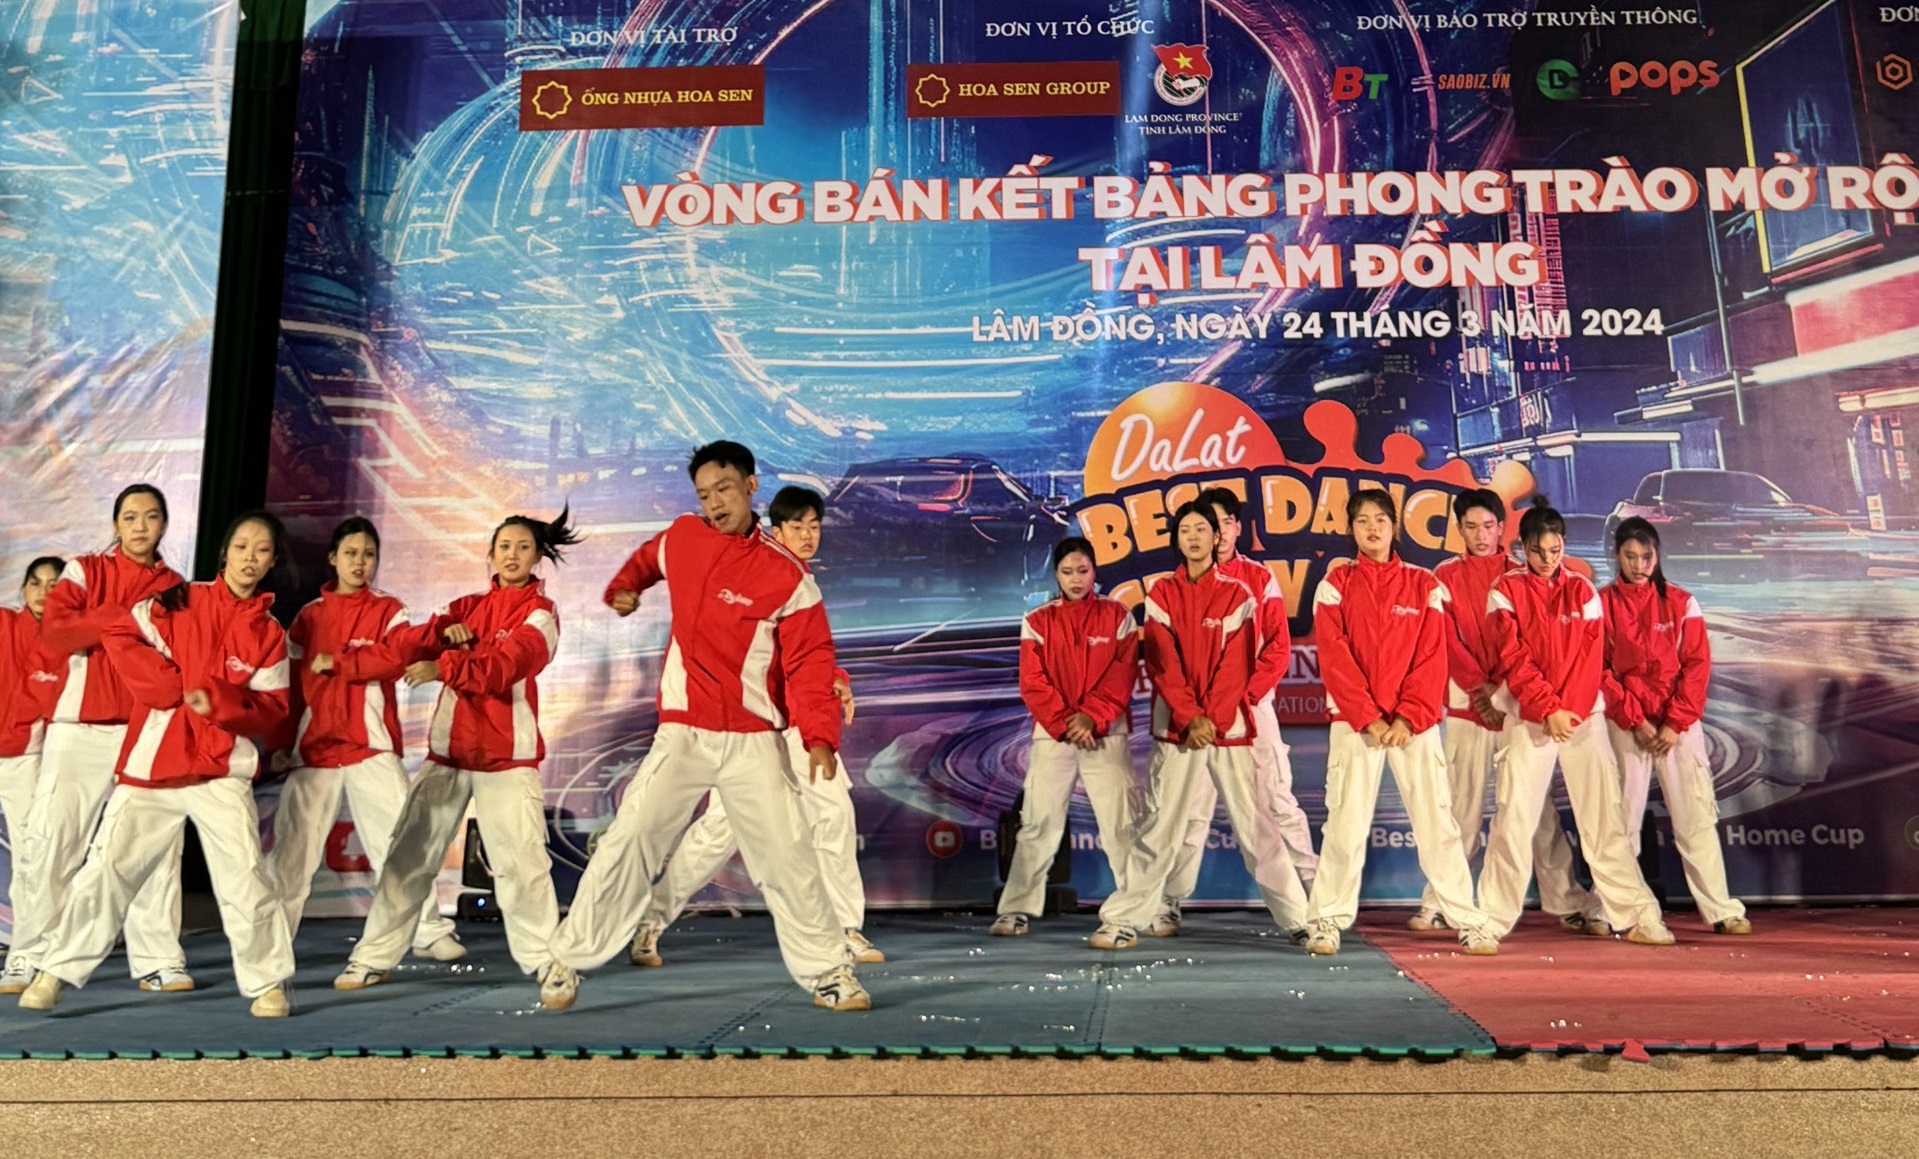 Lộ diện 14 nhóm nhảy phong trào tại Lâm Đồng lọt vào chung kết Dalat Best Dance Crew 2024 - Hoa Sen Home International Cup - 2